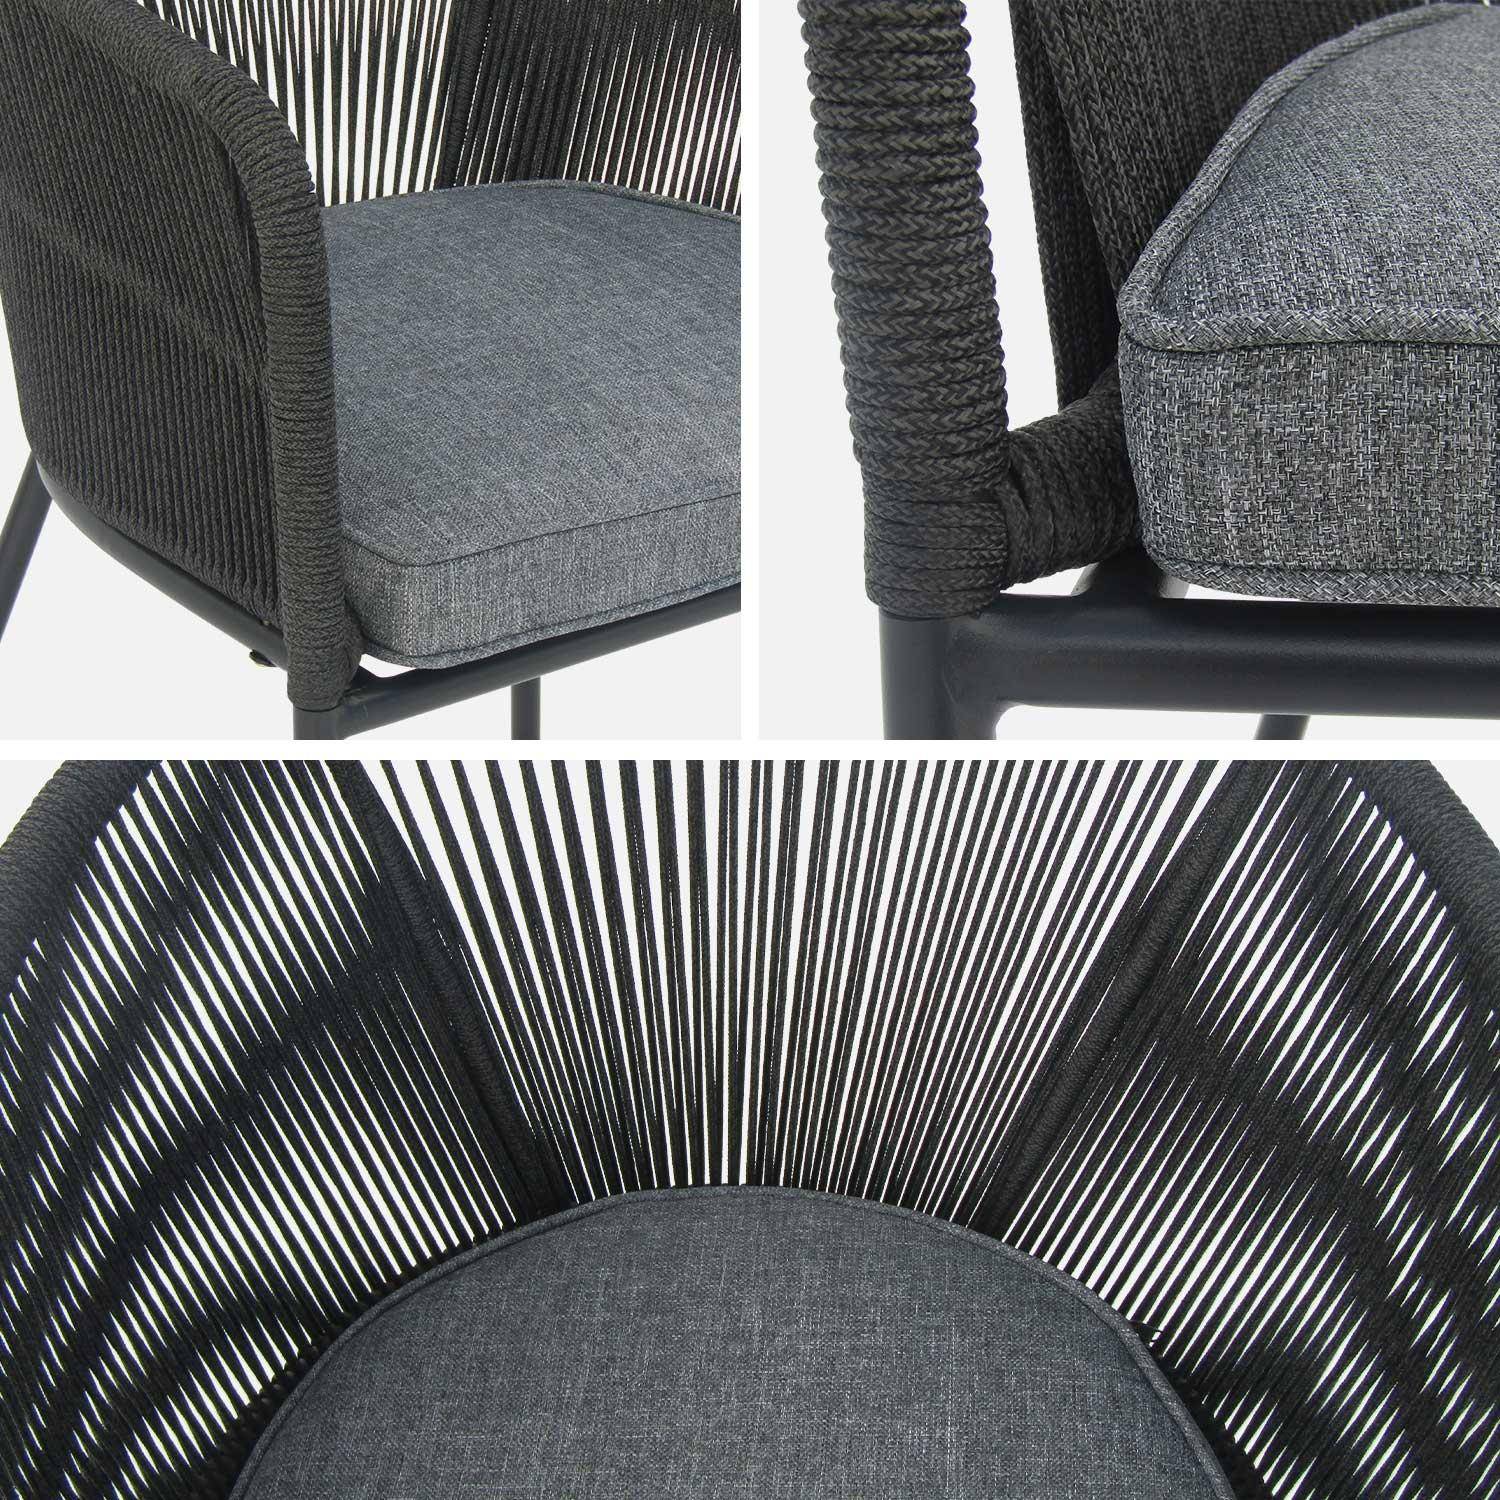 Lote de 4 sillones de jardín de cuerda negra y acero galvanizado, cojines grises Photo4